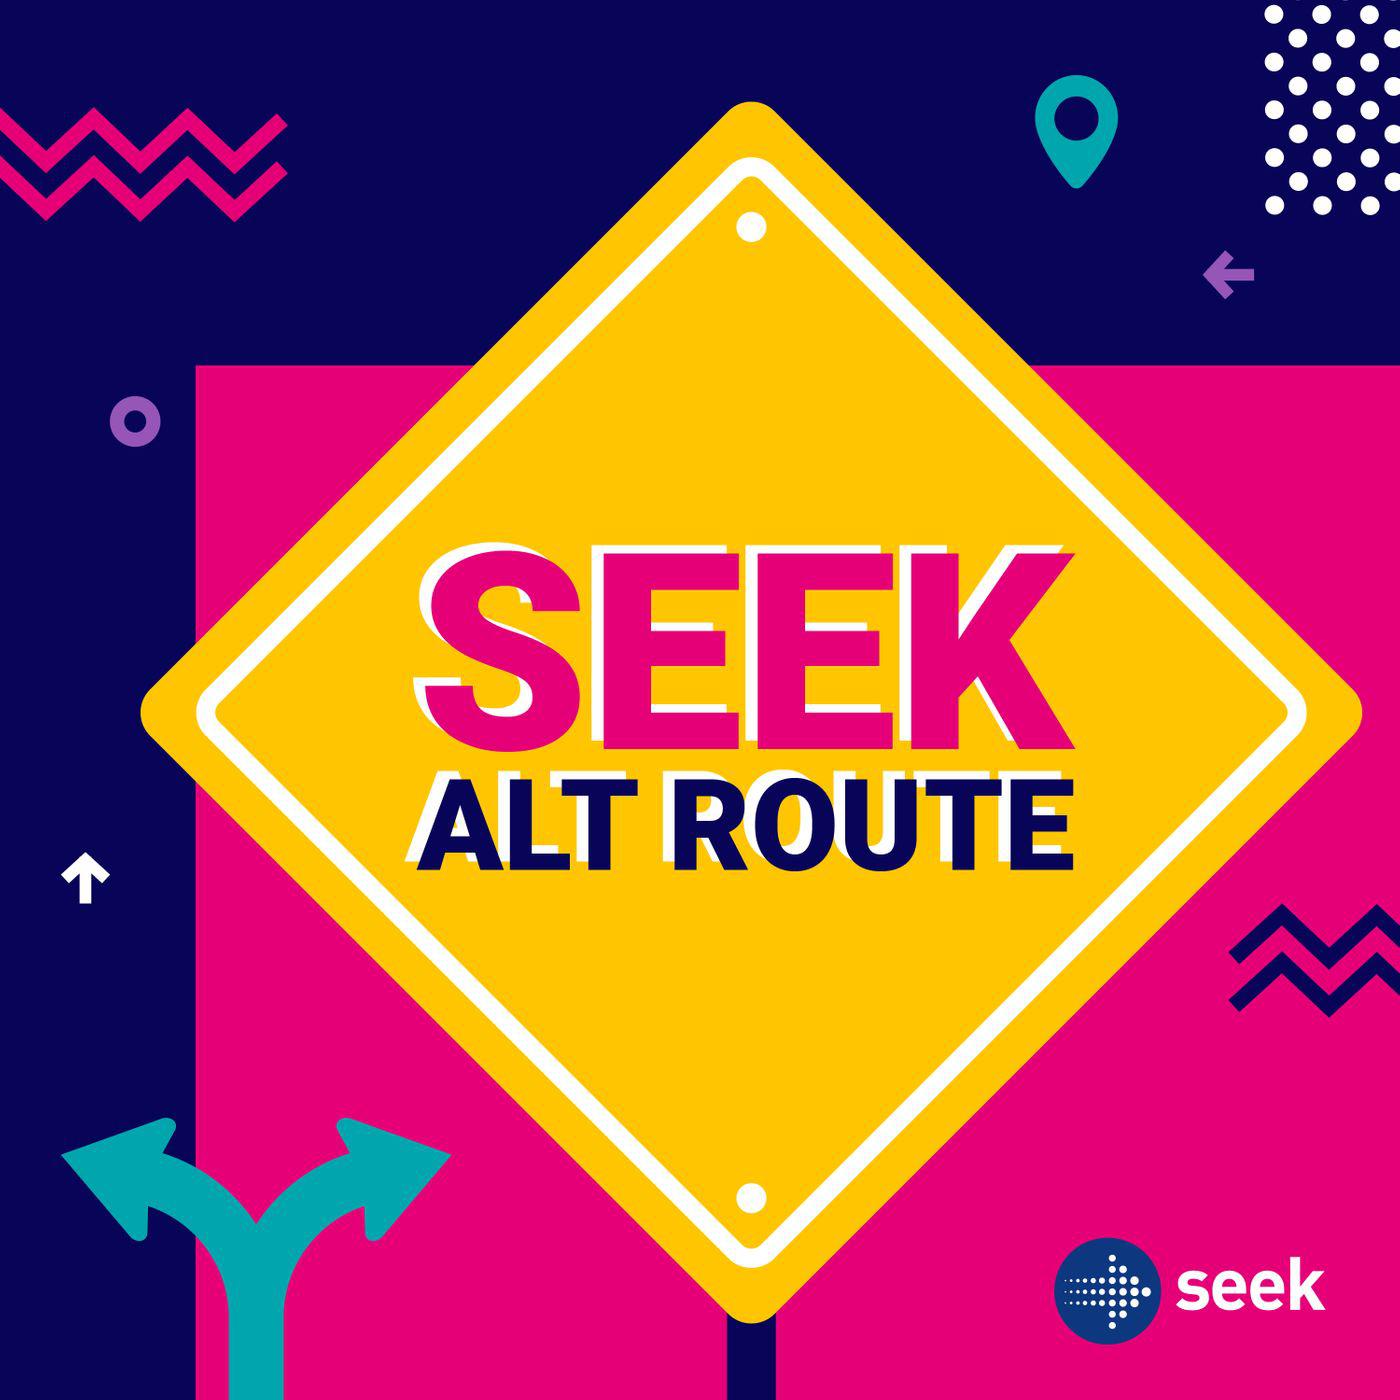 seek-alternate-route-seek-c8nu2tis14m-12rnuhf95gc_1400x1400